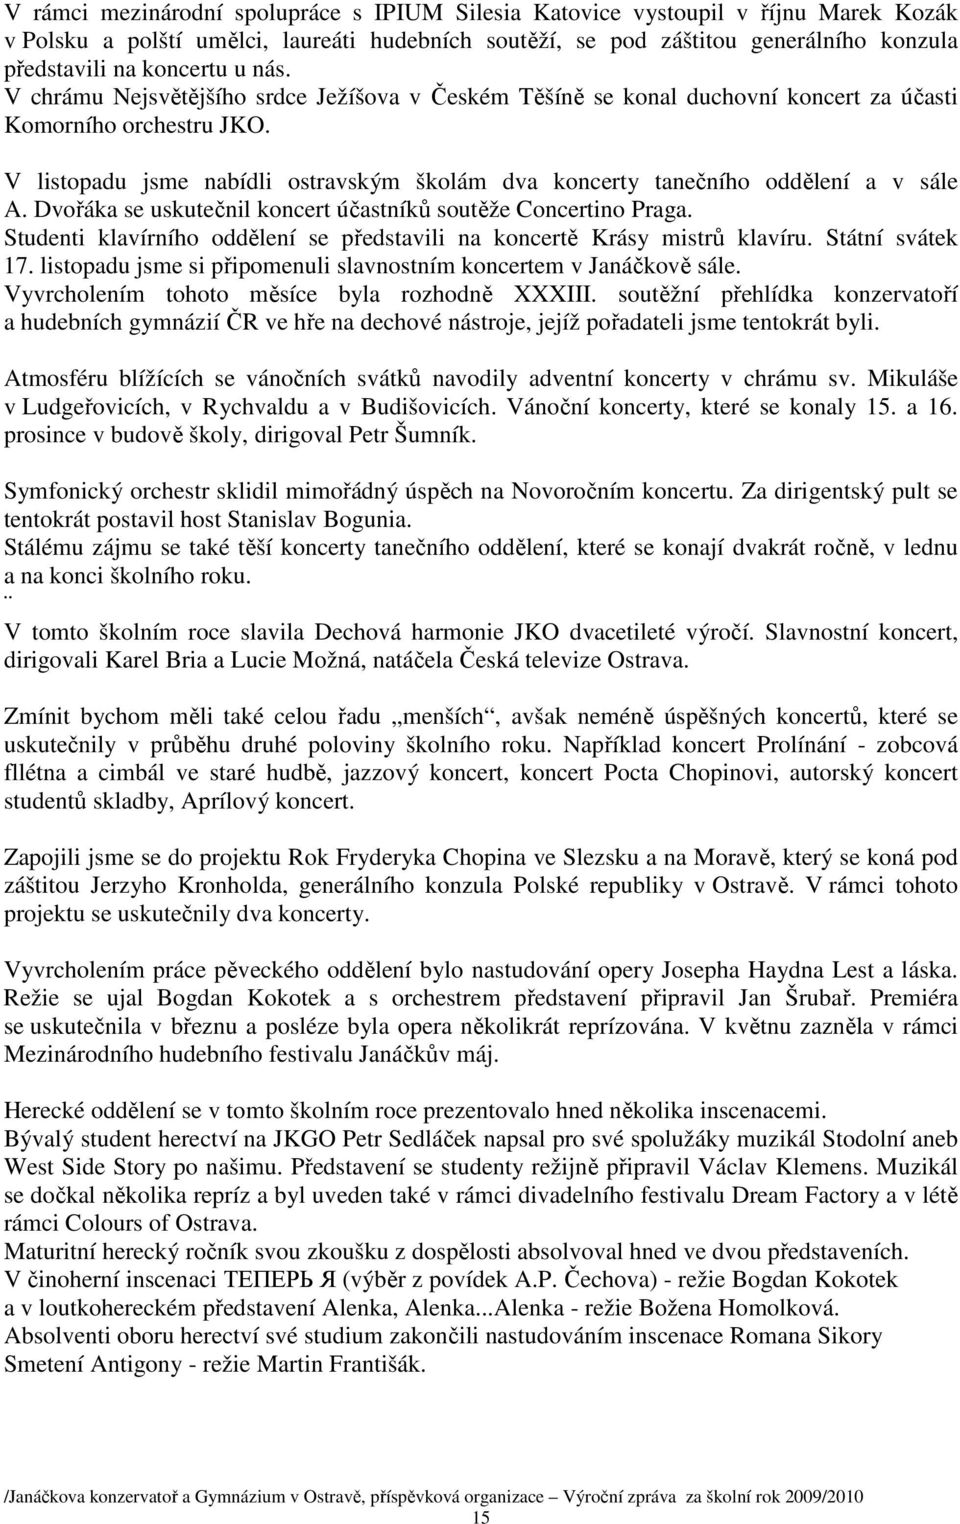 Janáčkova konzervatoř a Gymnázium v Ostravě - PDF Free Download